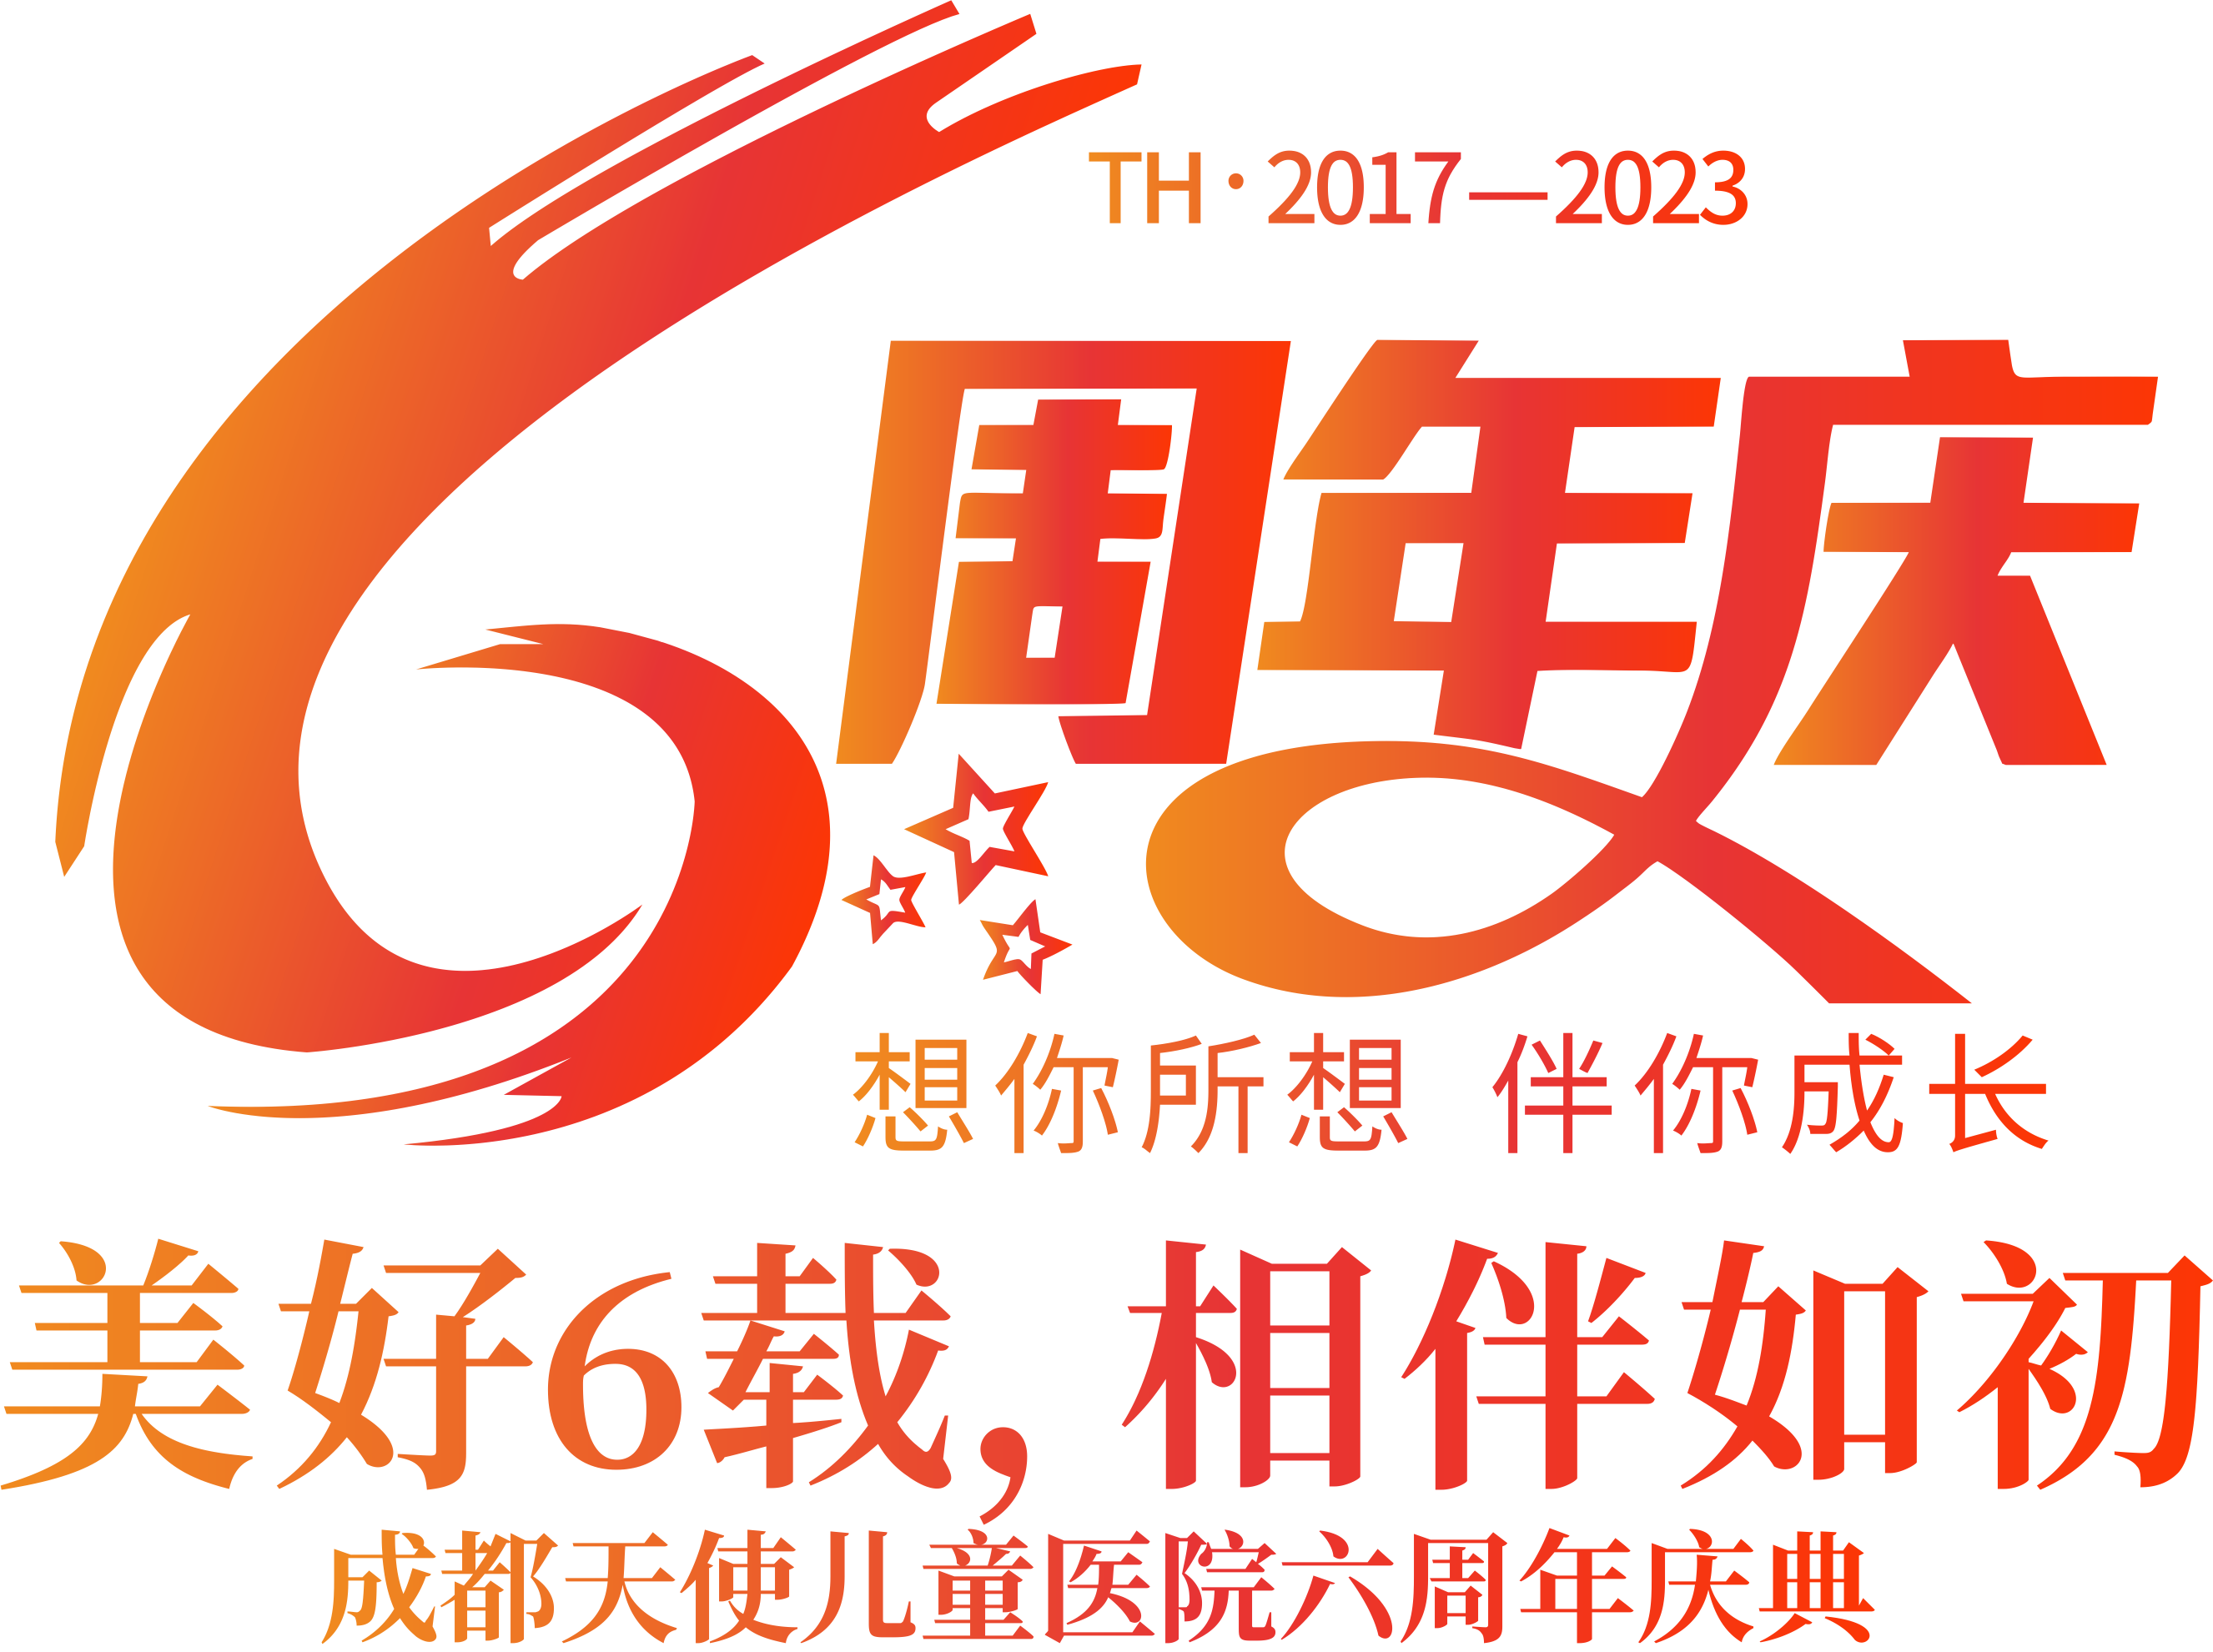 周年庆logo.png